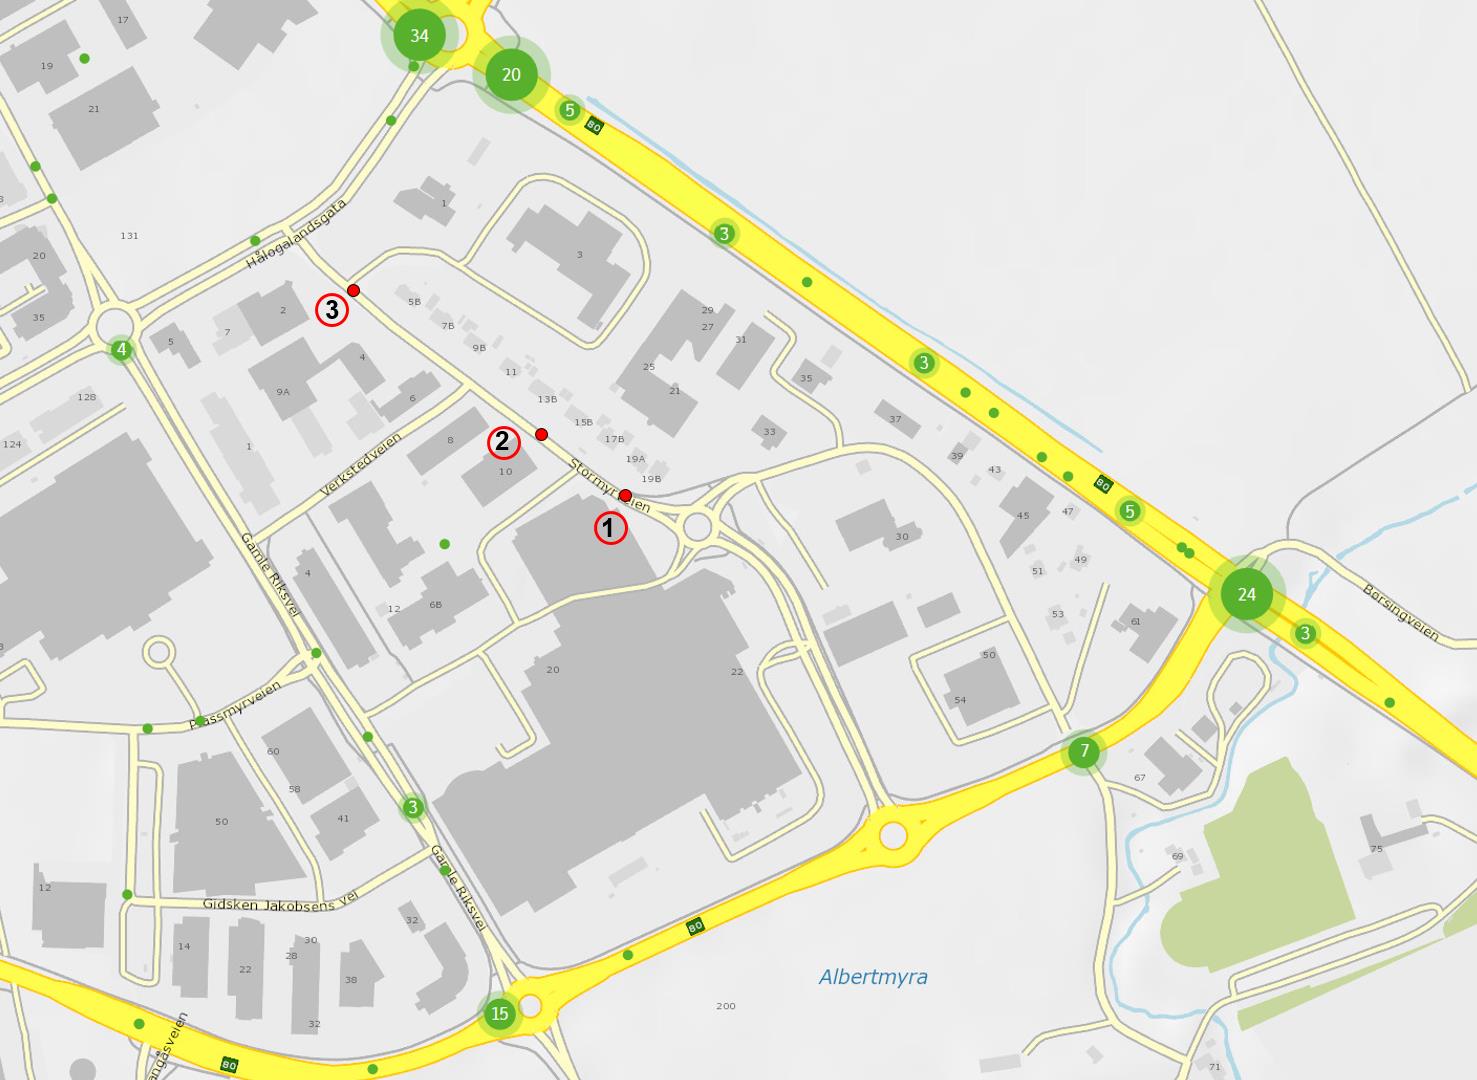 4.9 Trafikale frhld Planmrådet har adkmst fra Strmyrveien via rundkjøringen ved kjøpesentret City Nrd. Mesteparten av utearealene er brukt sm parkeringsplass g trafikkareal/manøvreringsareal.